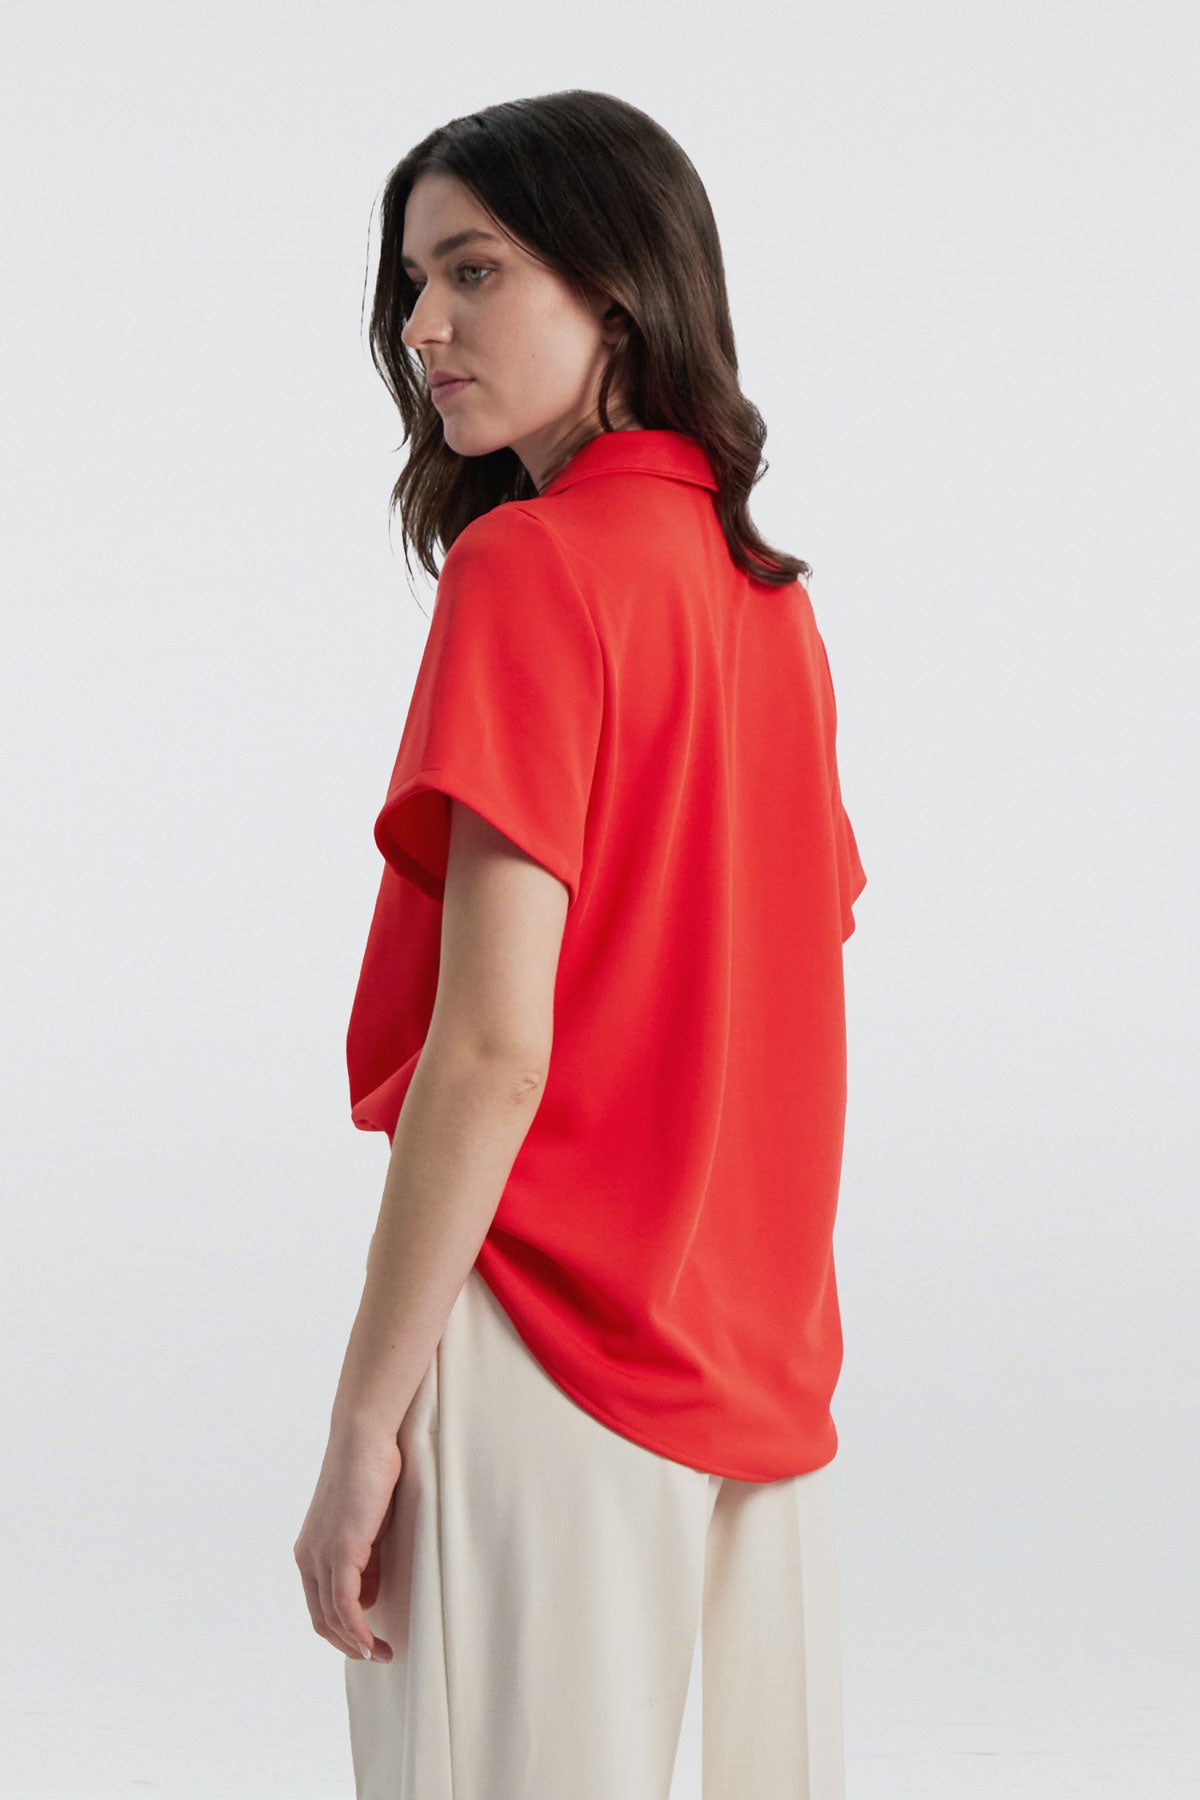 Camisa manga corta rojo cardio de Sepiia, fresca y elegante, perfecta para el verano. Foto espalda